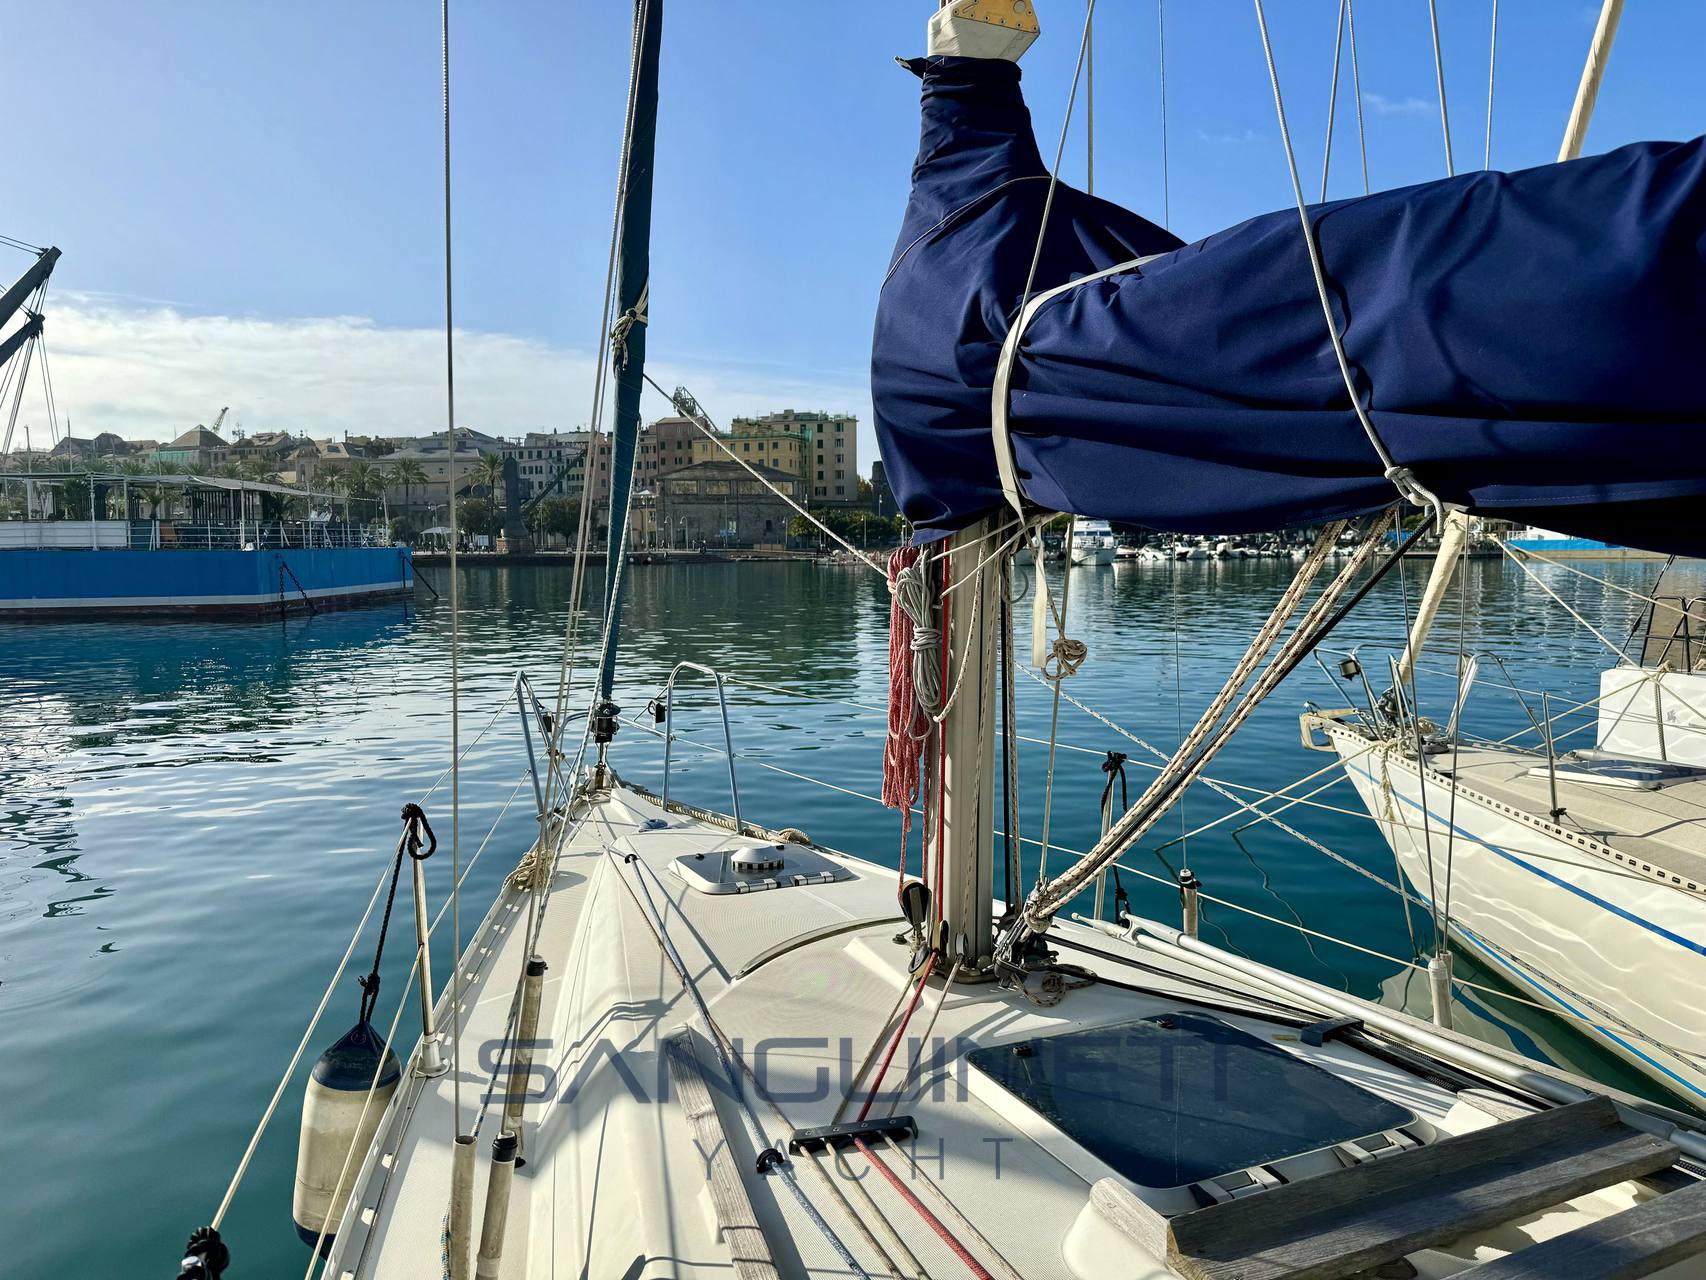 Jeanneau Sun odyssey 32.2 sailing boat